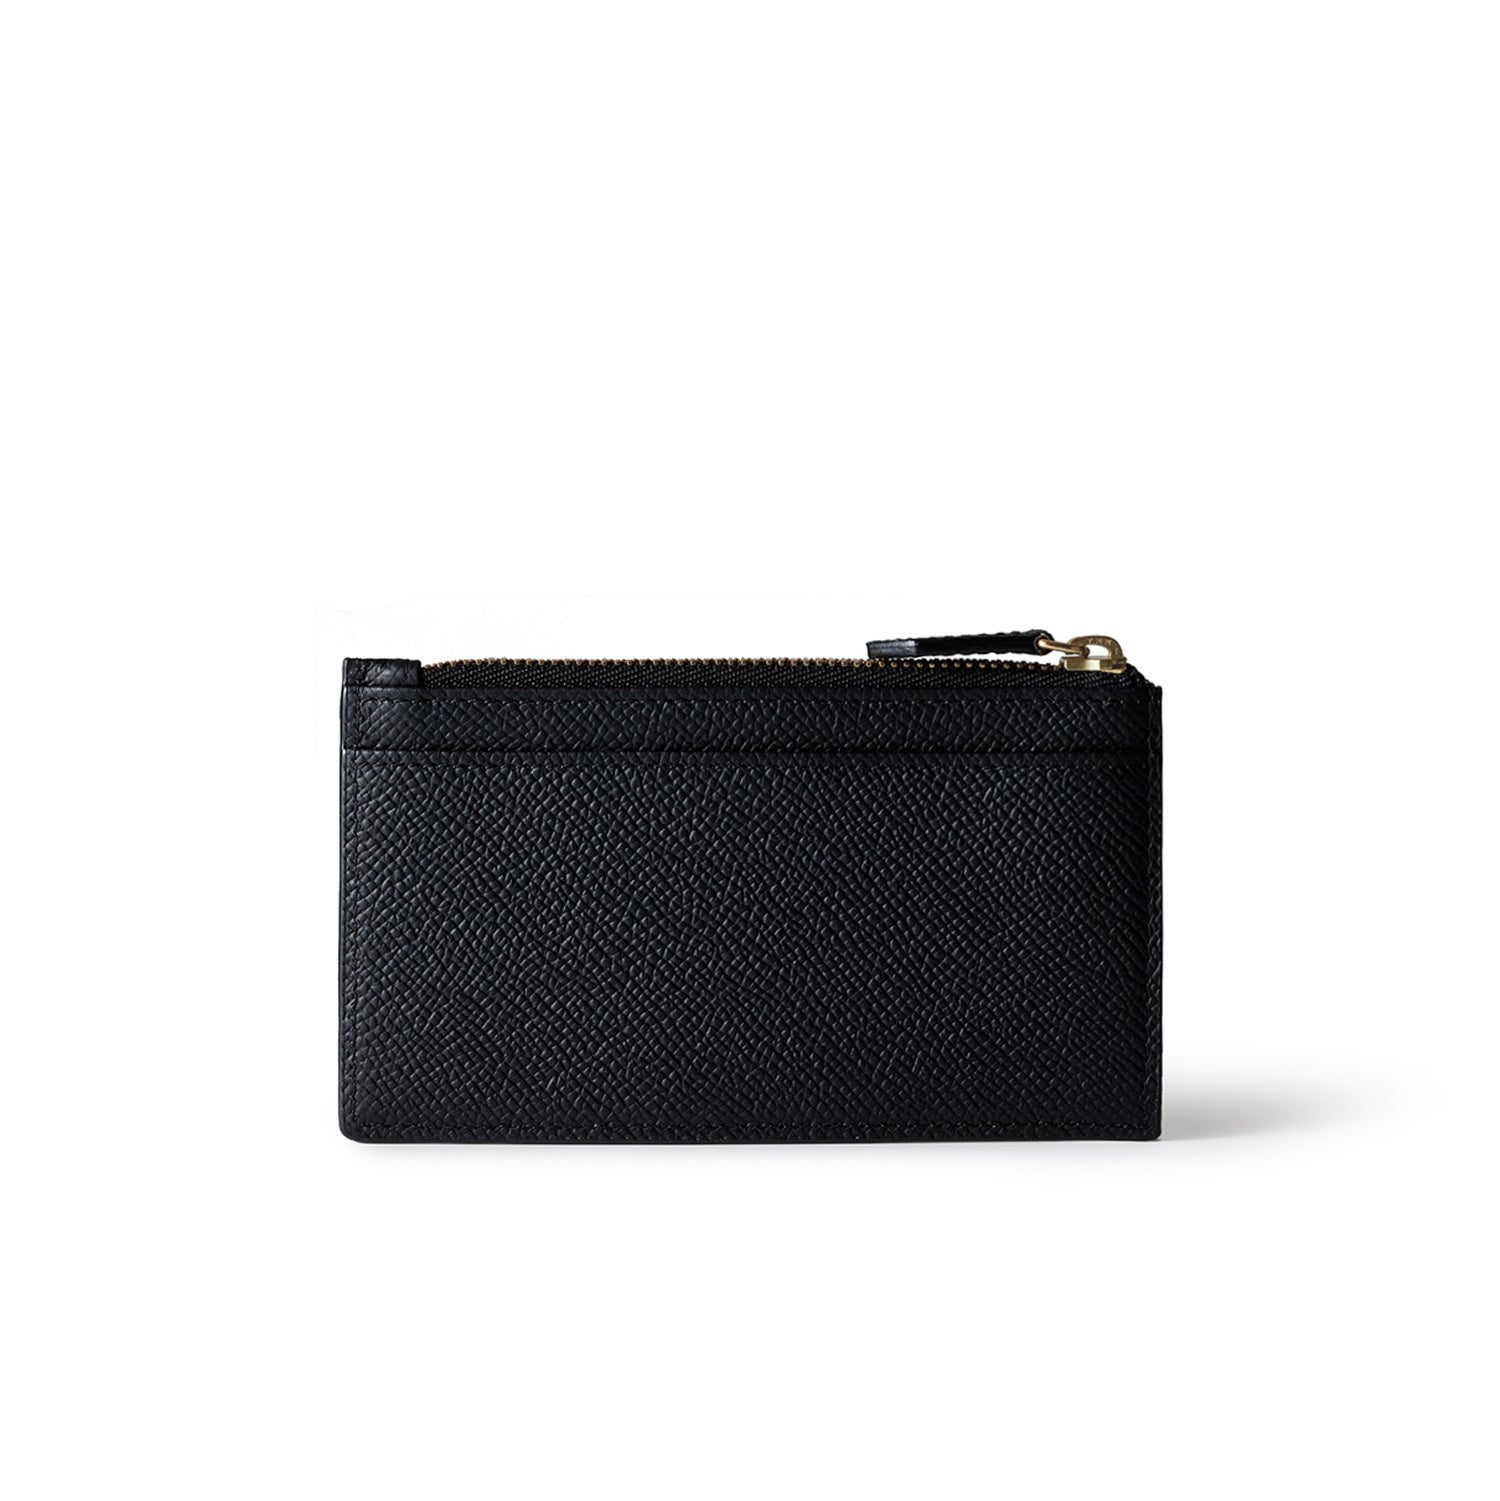 BONAVENTURA × Tiamo กระเป๋าสตางค์ซิปขนาดเล็ก หนังจระเข้นูน